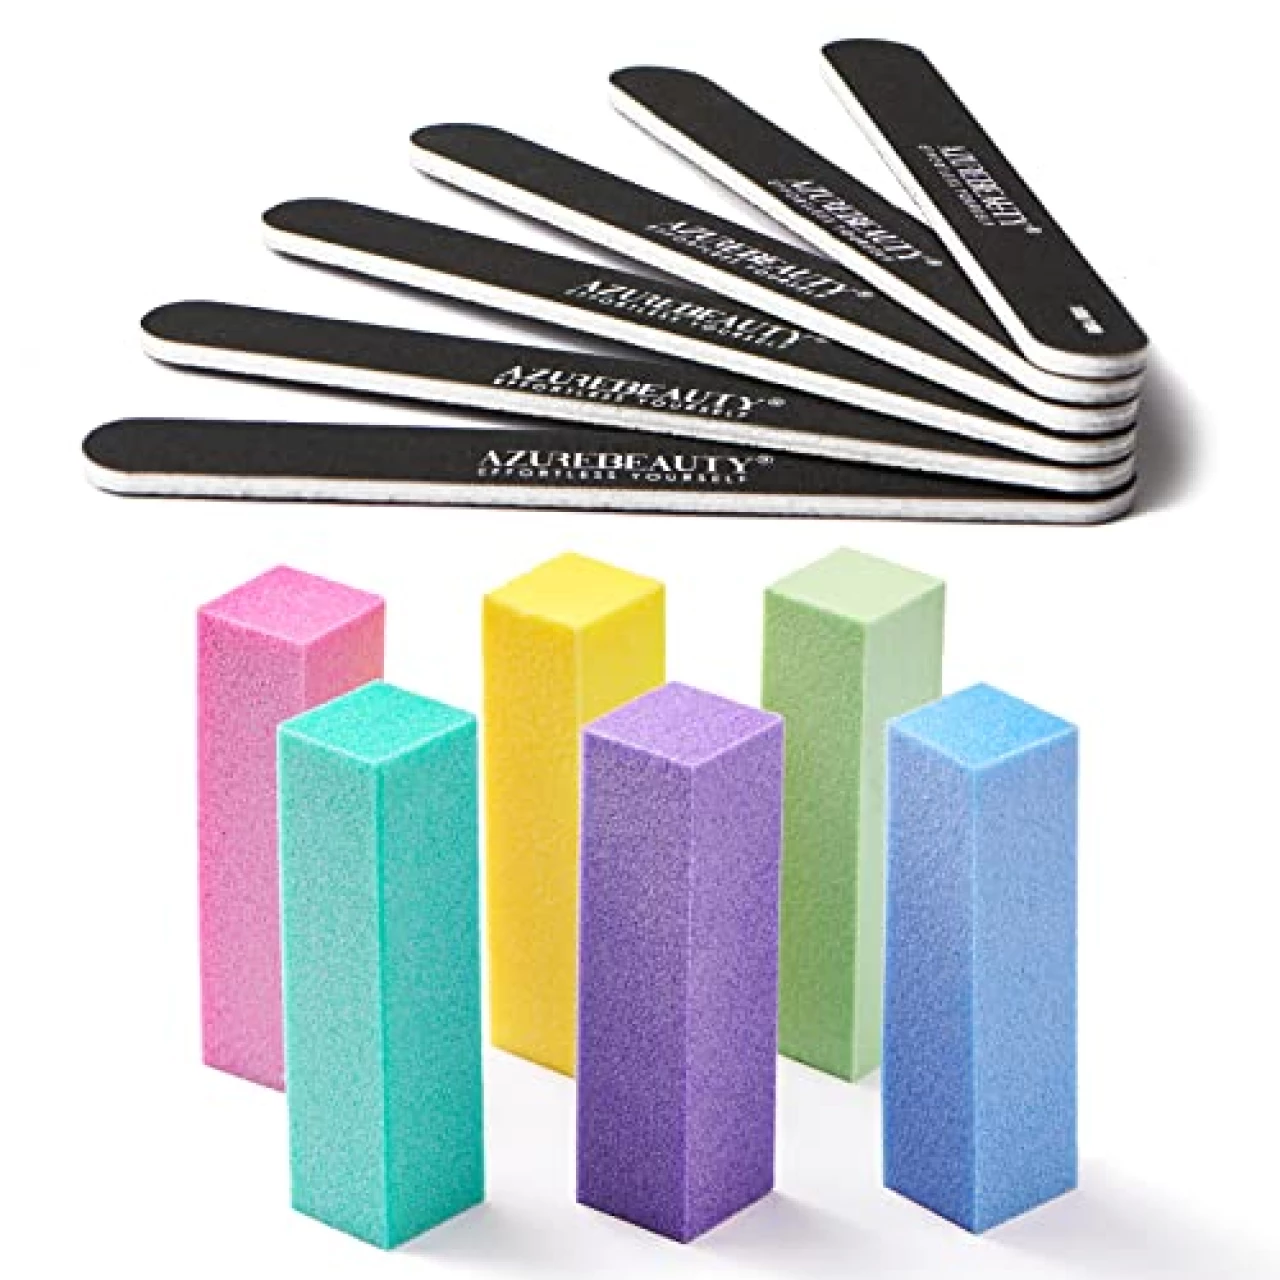 Nail Files and Buffers, AZUREBEAUTY 12Pcs Professional Manicure Tools Kit